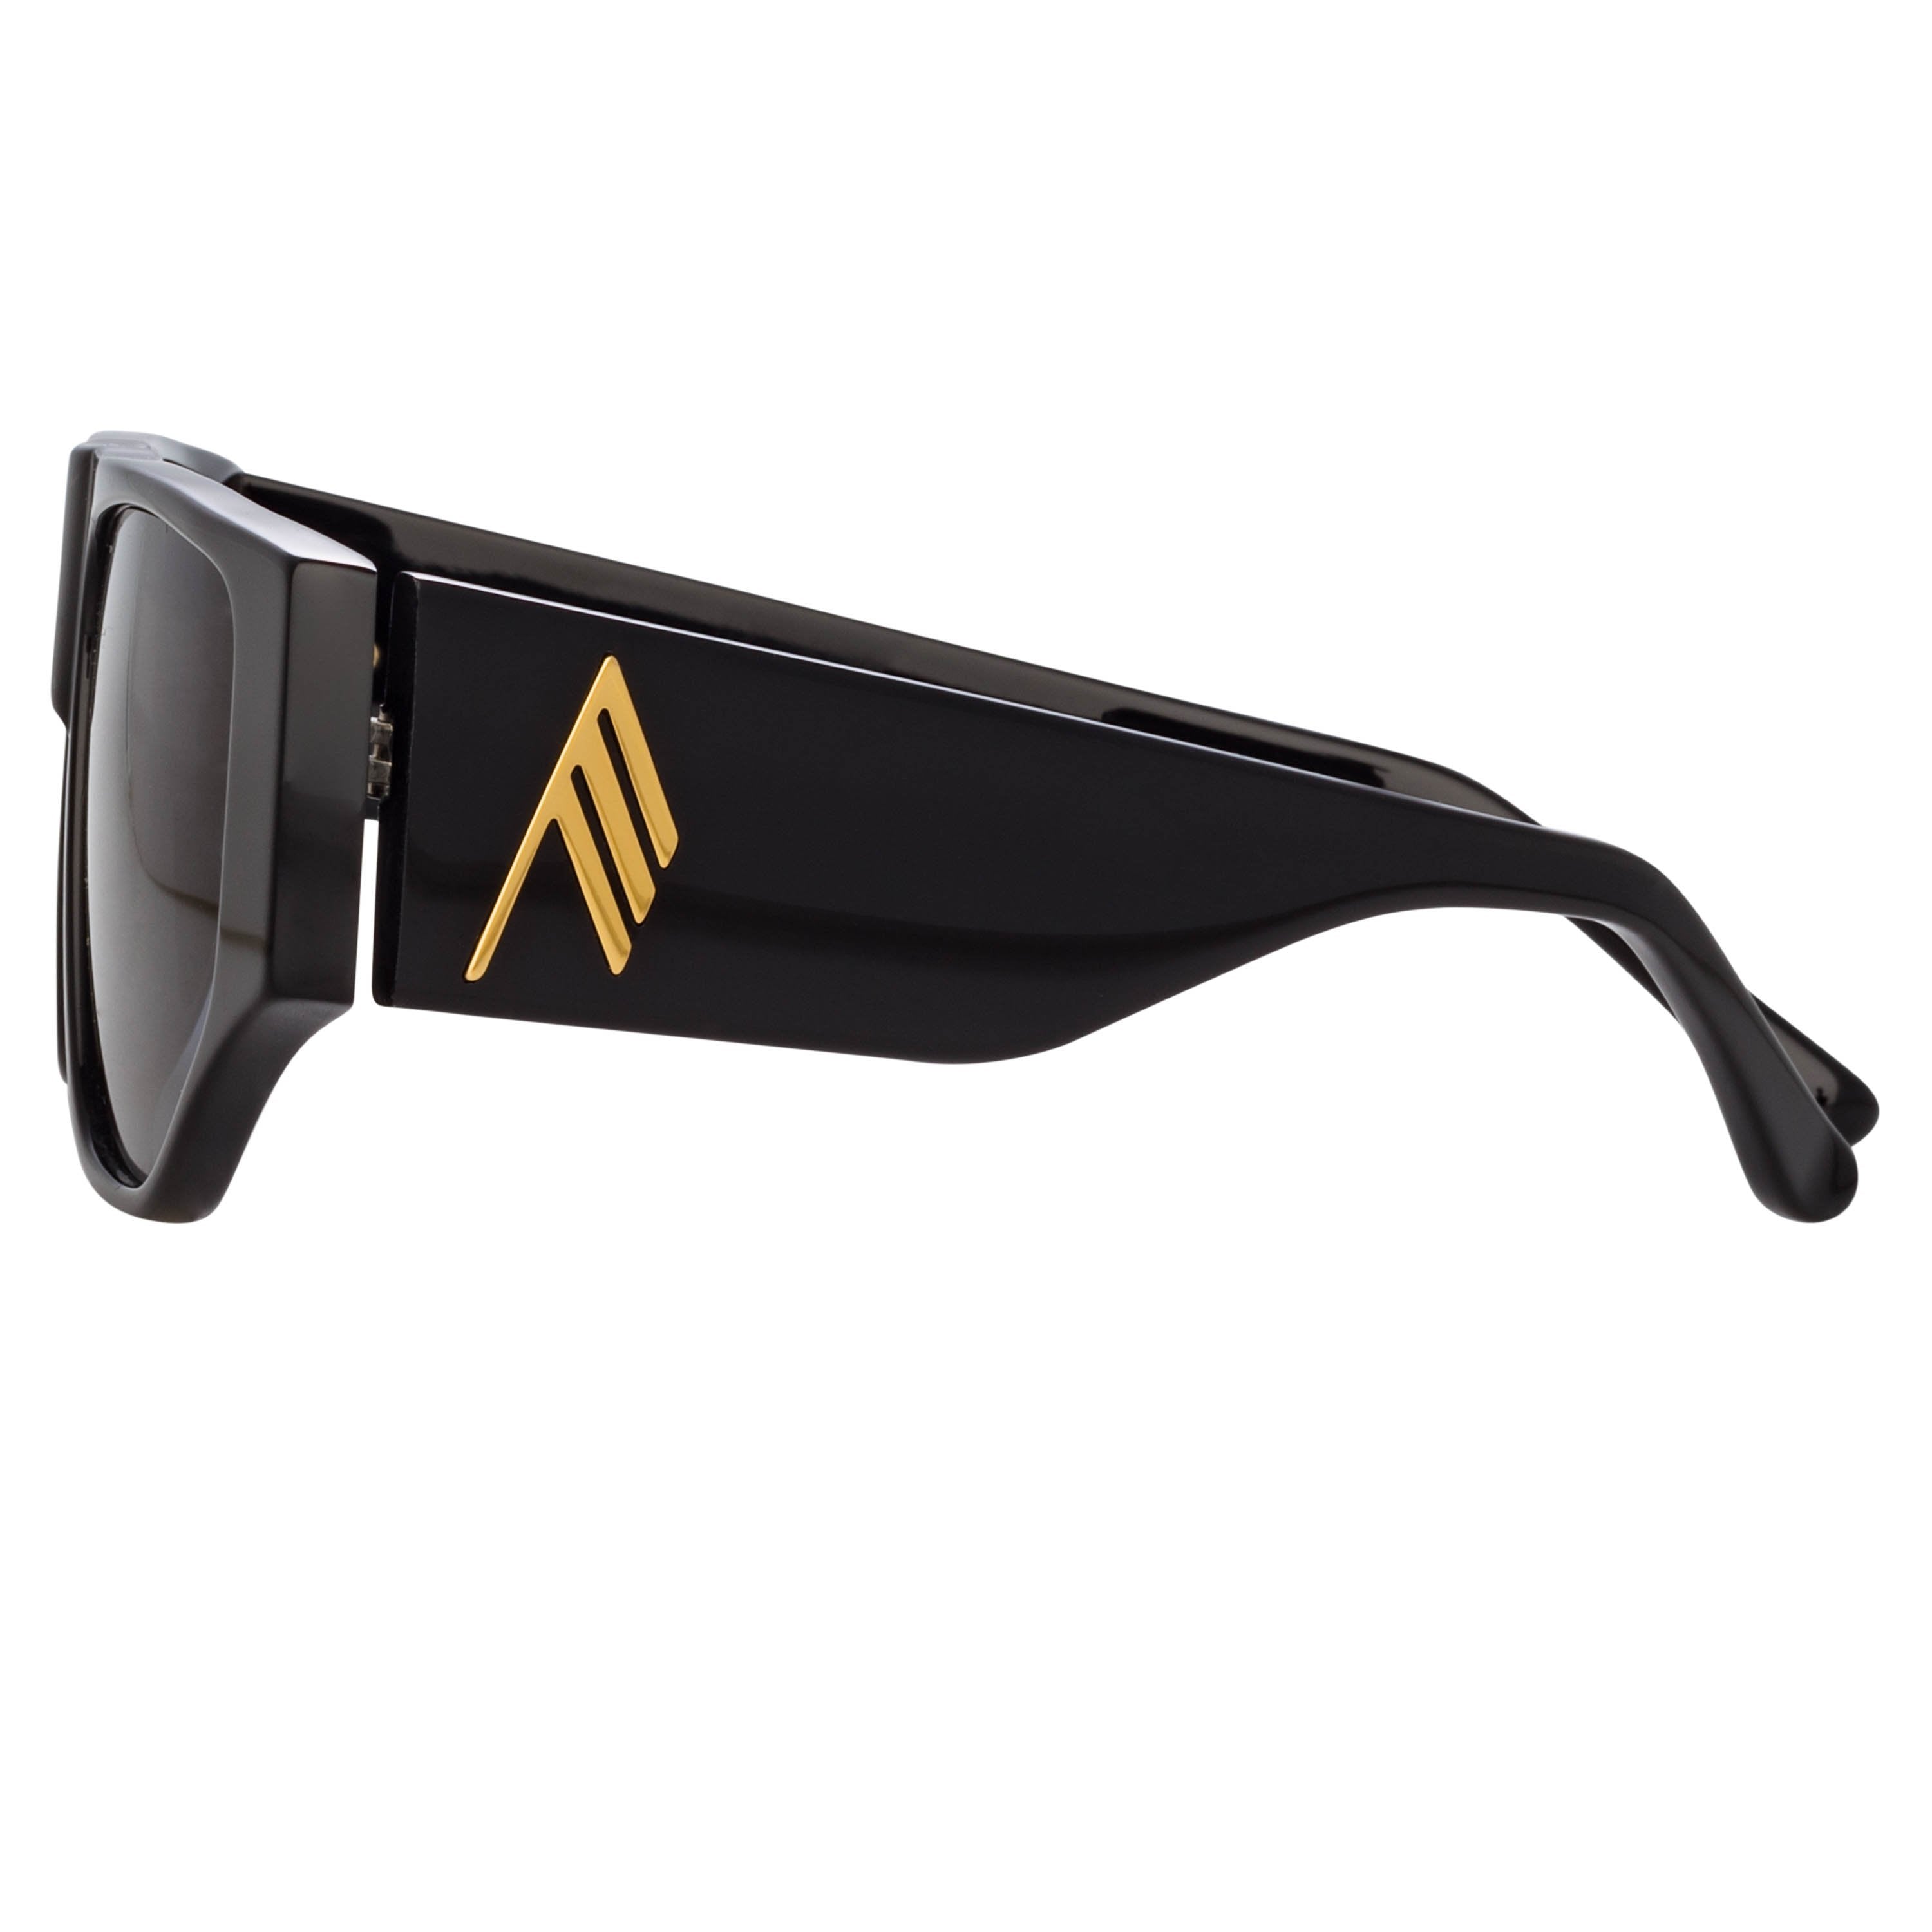 Color_ATTICO11C1SUN - The Attico Ivan Angular Sunglasses in Black